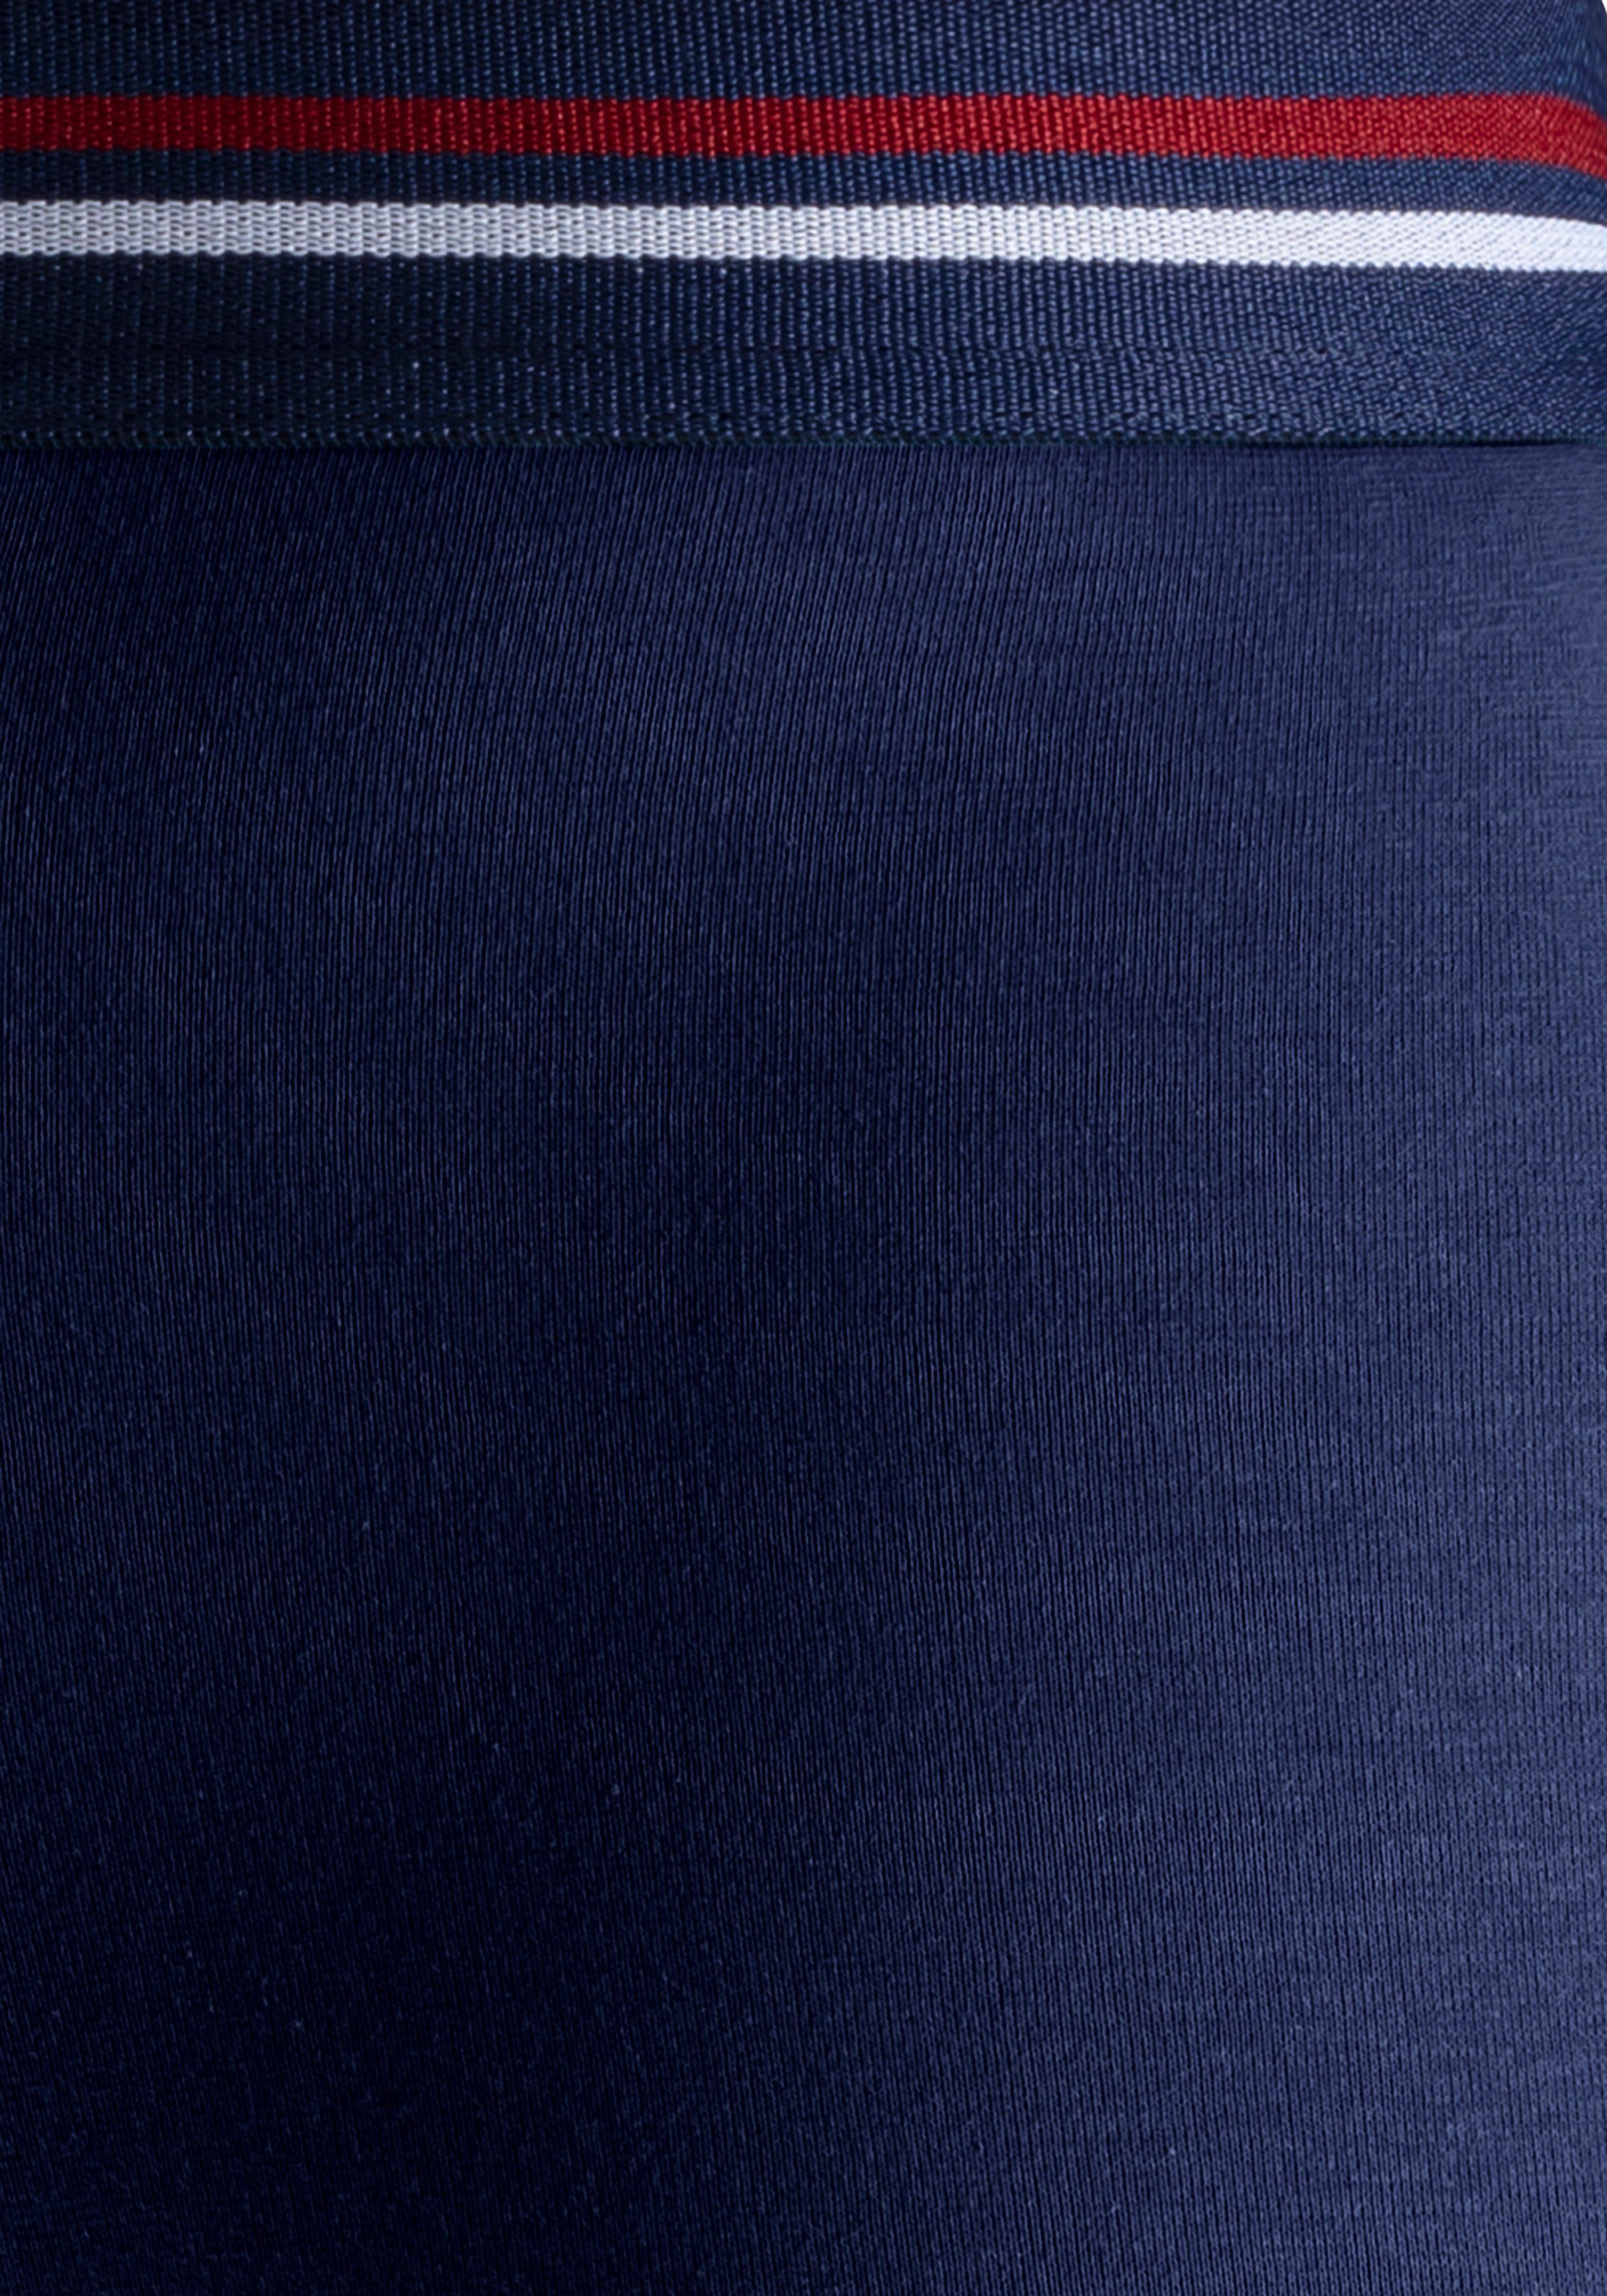 H.I.S Boxer (Packung, 5-St) weiß mit im Markenlogo hellblau, und navy, schwarz, Streifen blau, Bund